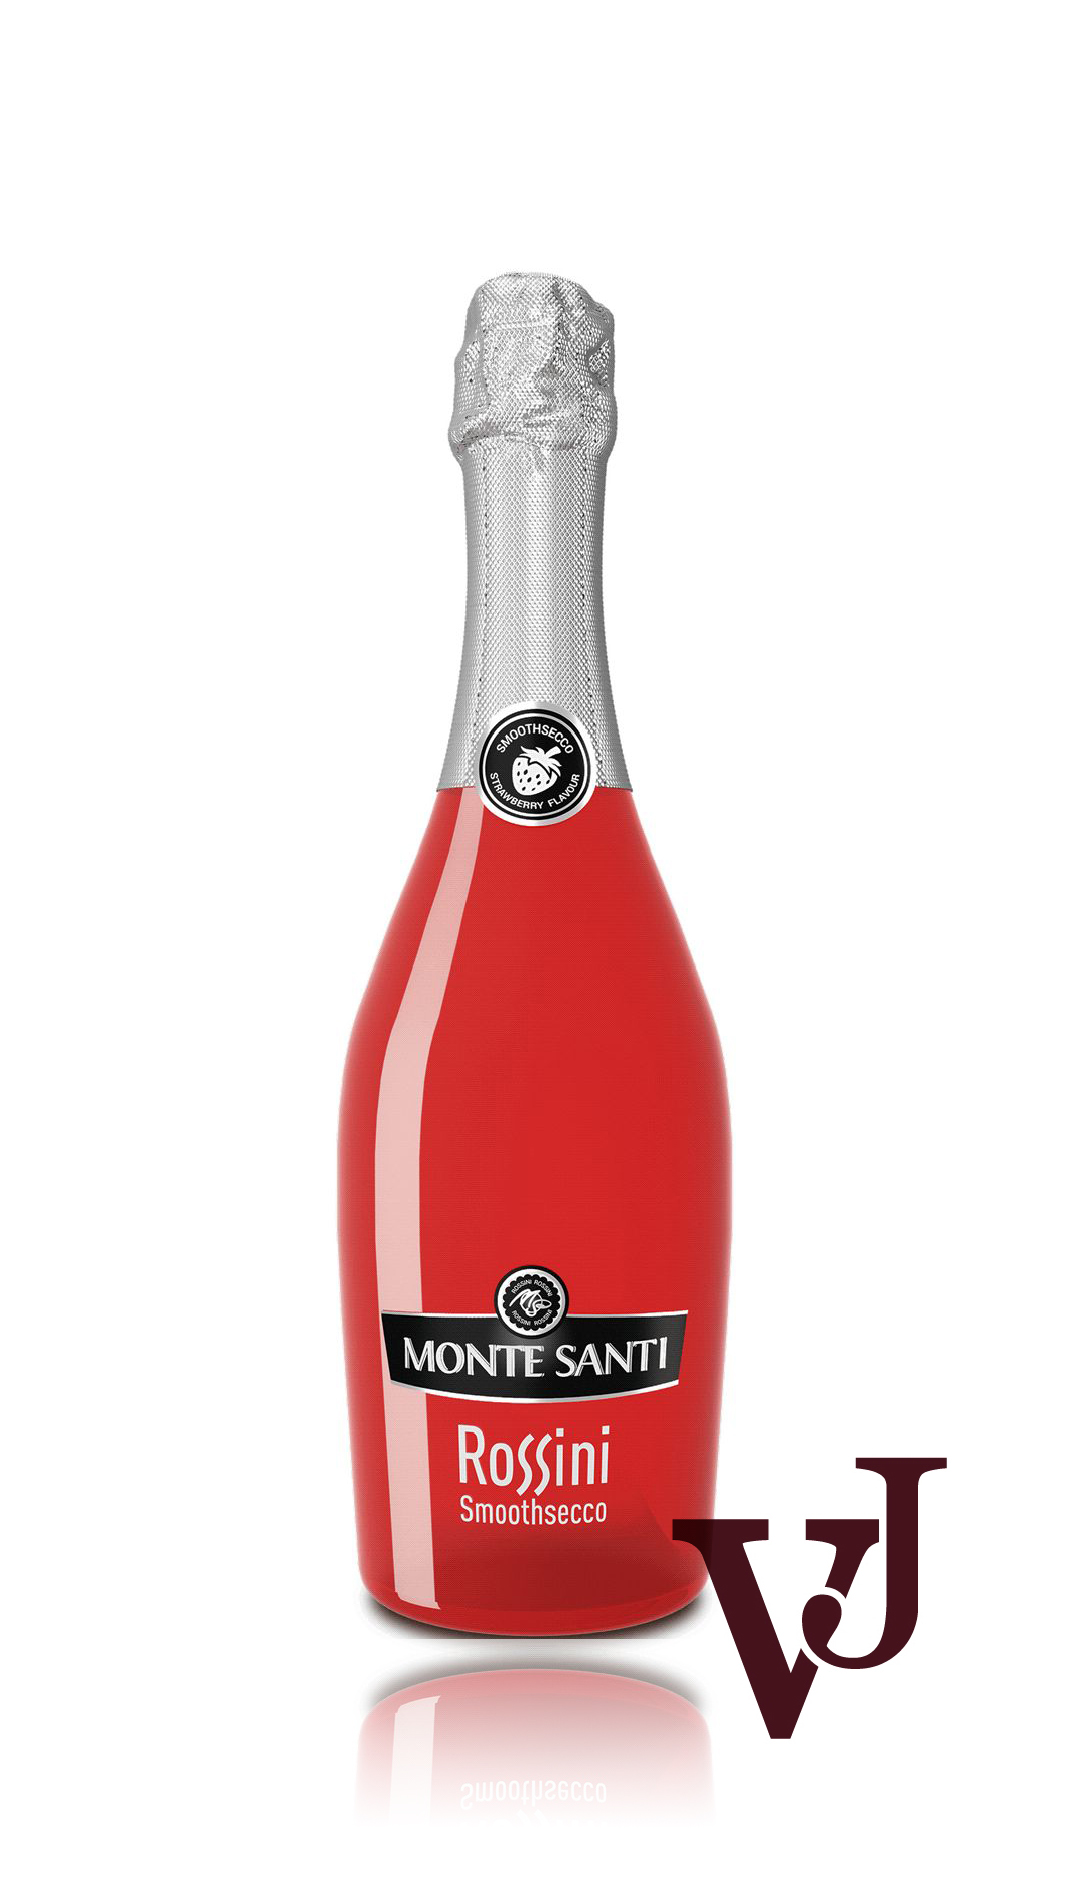 Övrigt vin - Monte Santi Smoothsecco Rossini artikel nummer 7131501 från producenten Janton S.A Sp.K från området Polen